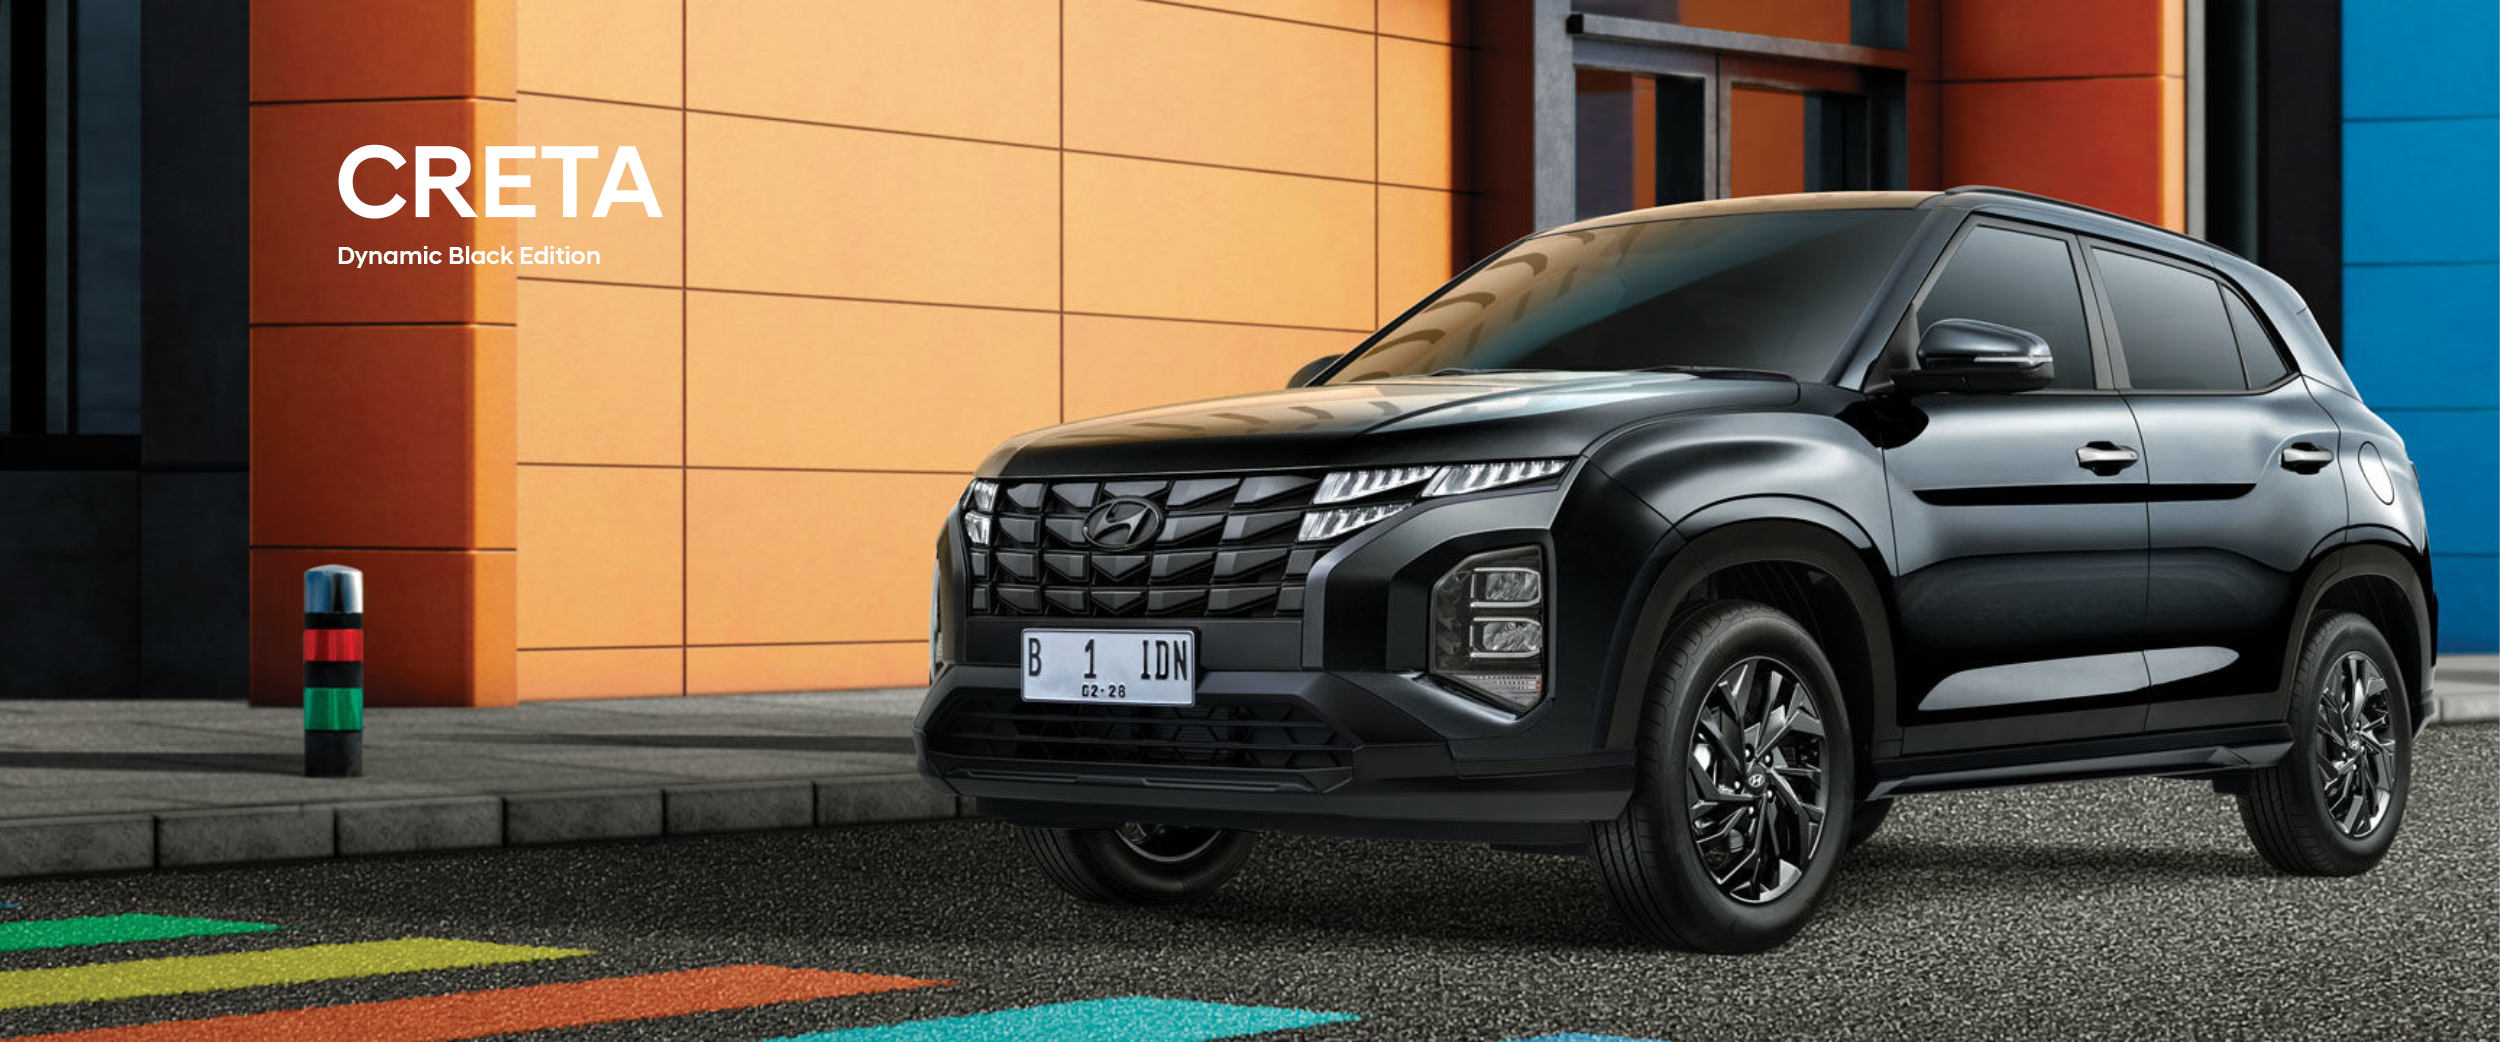 Hyundai-Creta-Dynamic-Black-Edition